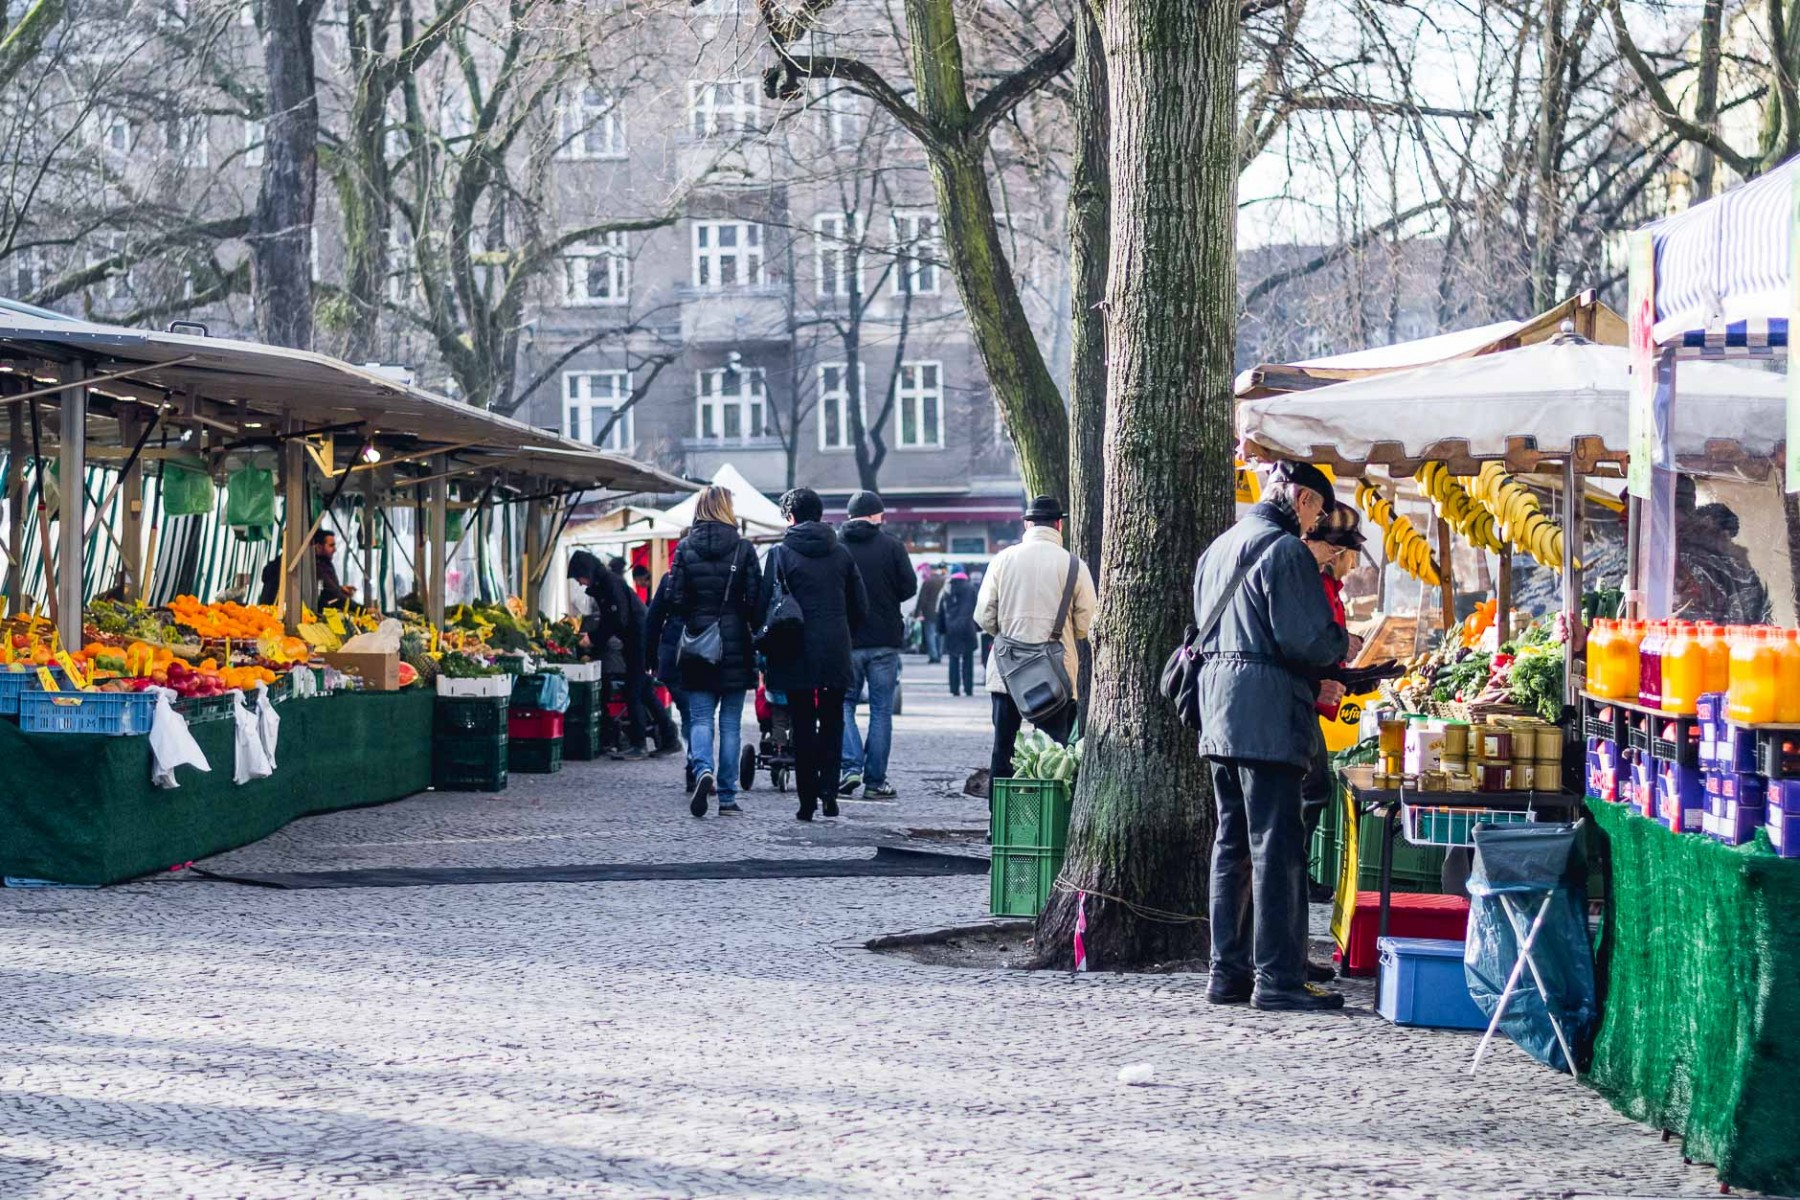 Farmers' market in Berlin, Germany